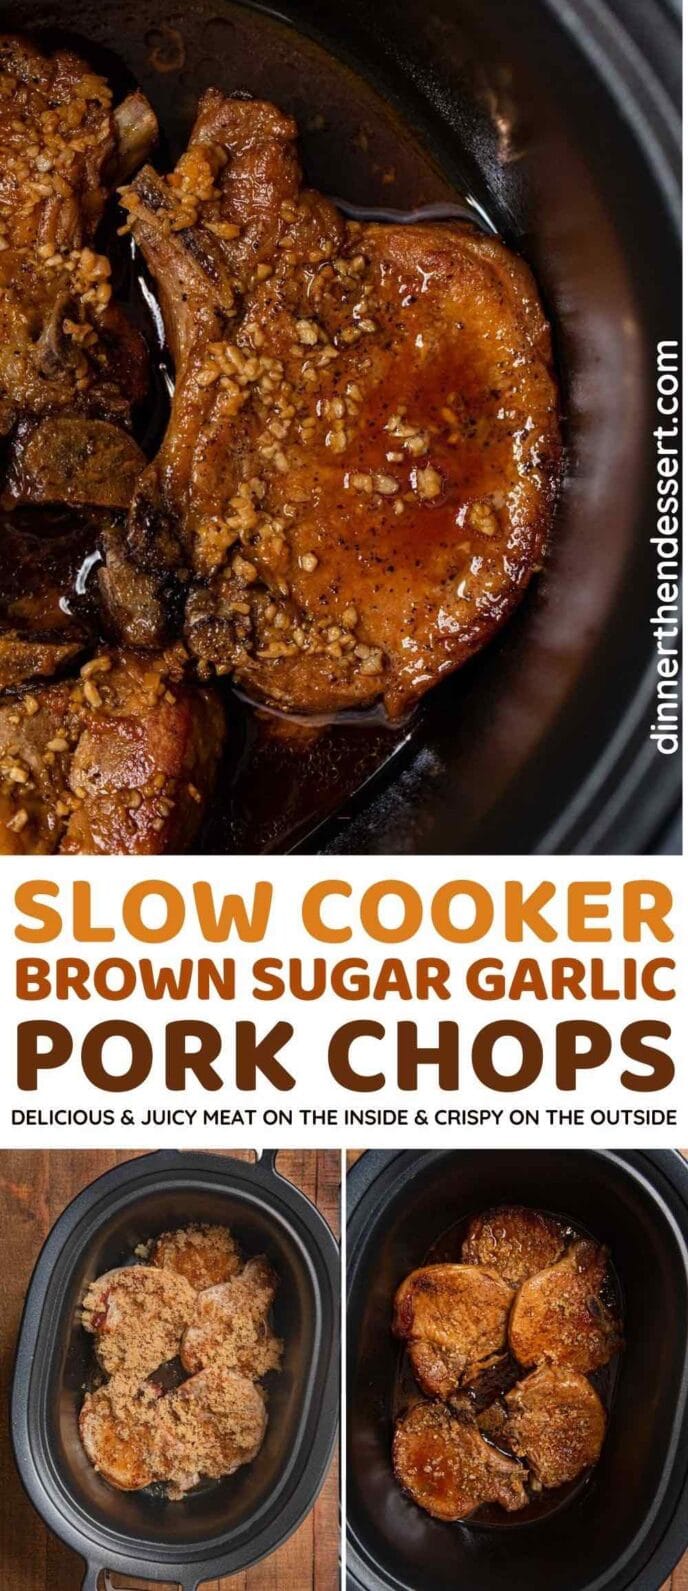 Brown Sugar Garlic Pork Chops collage